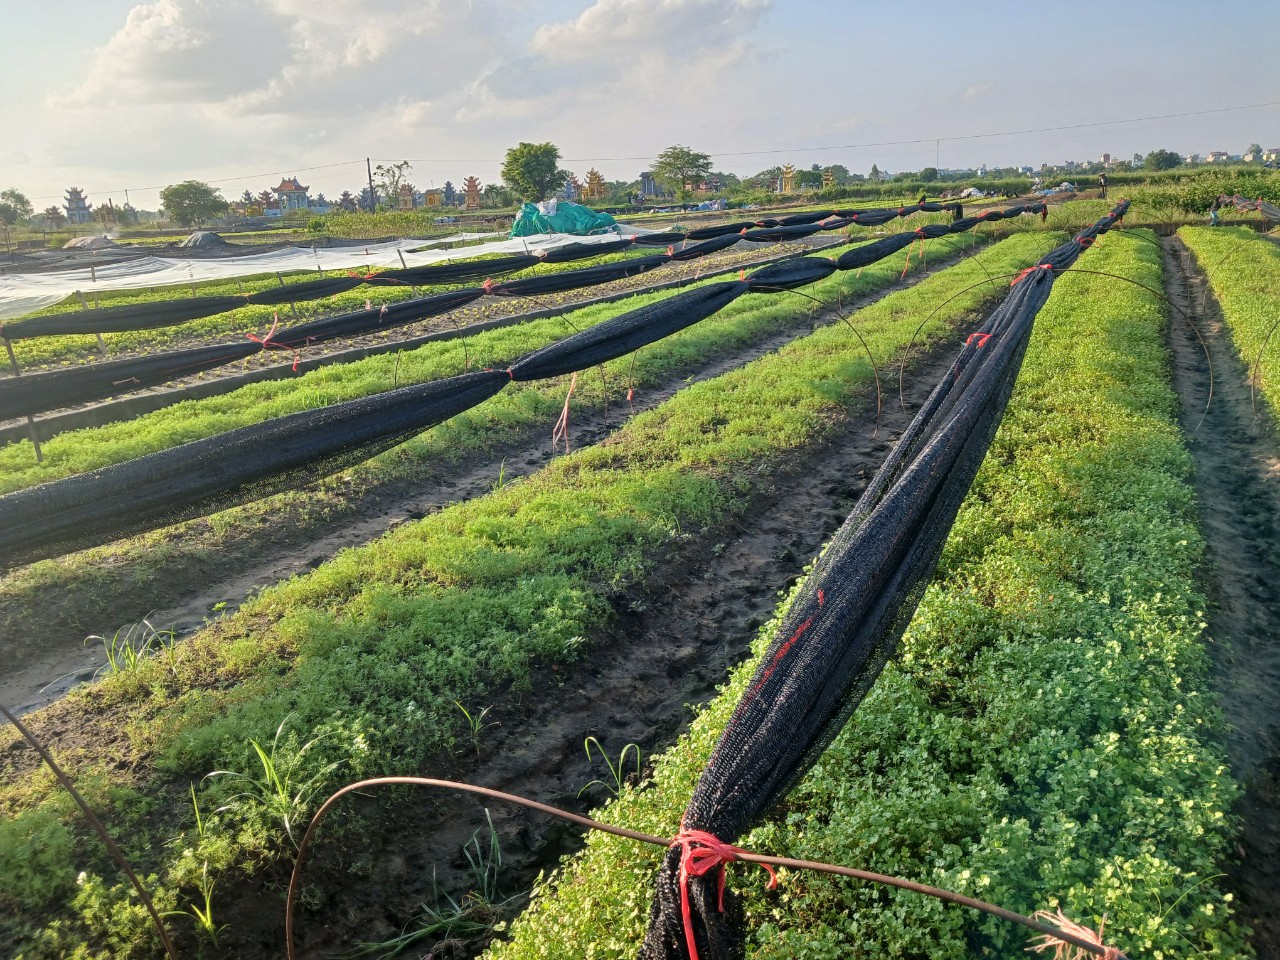 Hợp tác xã nông nghiệp xanh Trung An - trồng rau hữu cơ mang lại hiệu quả trong nông nghiệp.